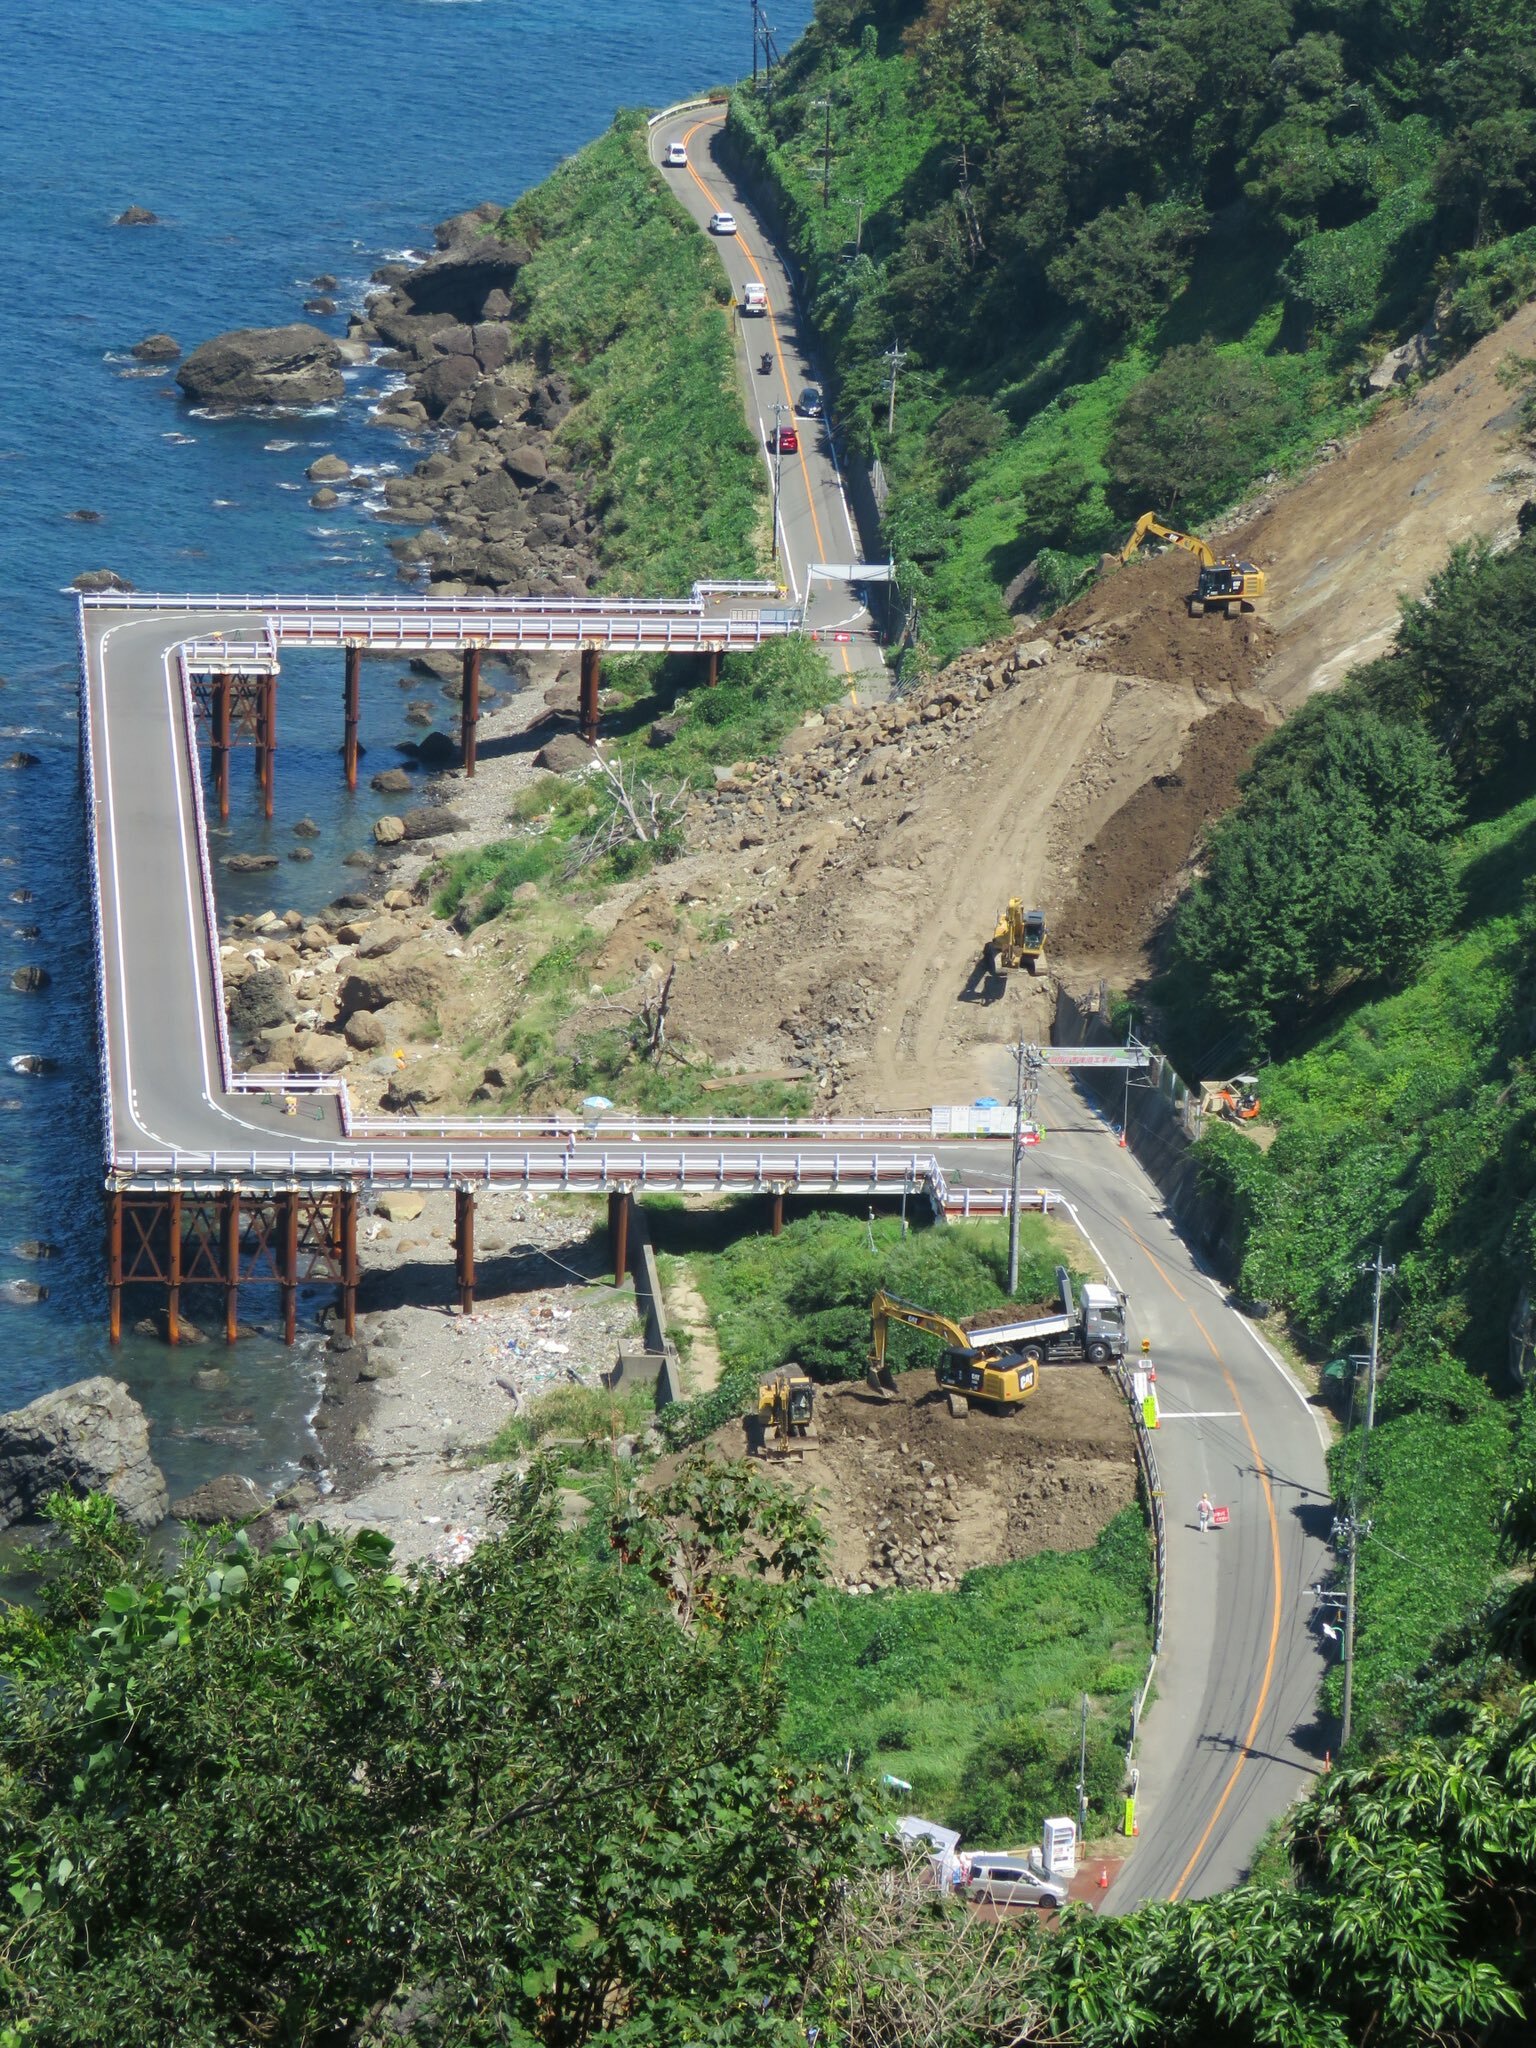 route temporaire construite autour d’un glissement de terrain dans la préfecture de fukui, japon